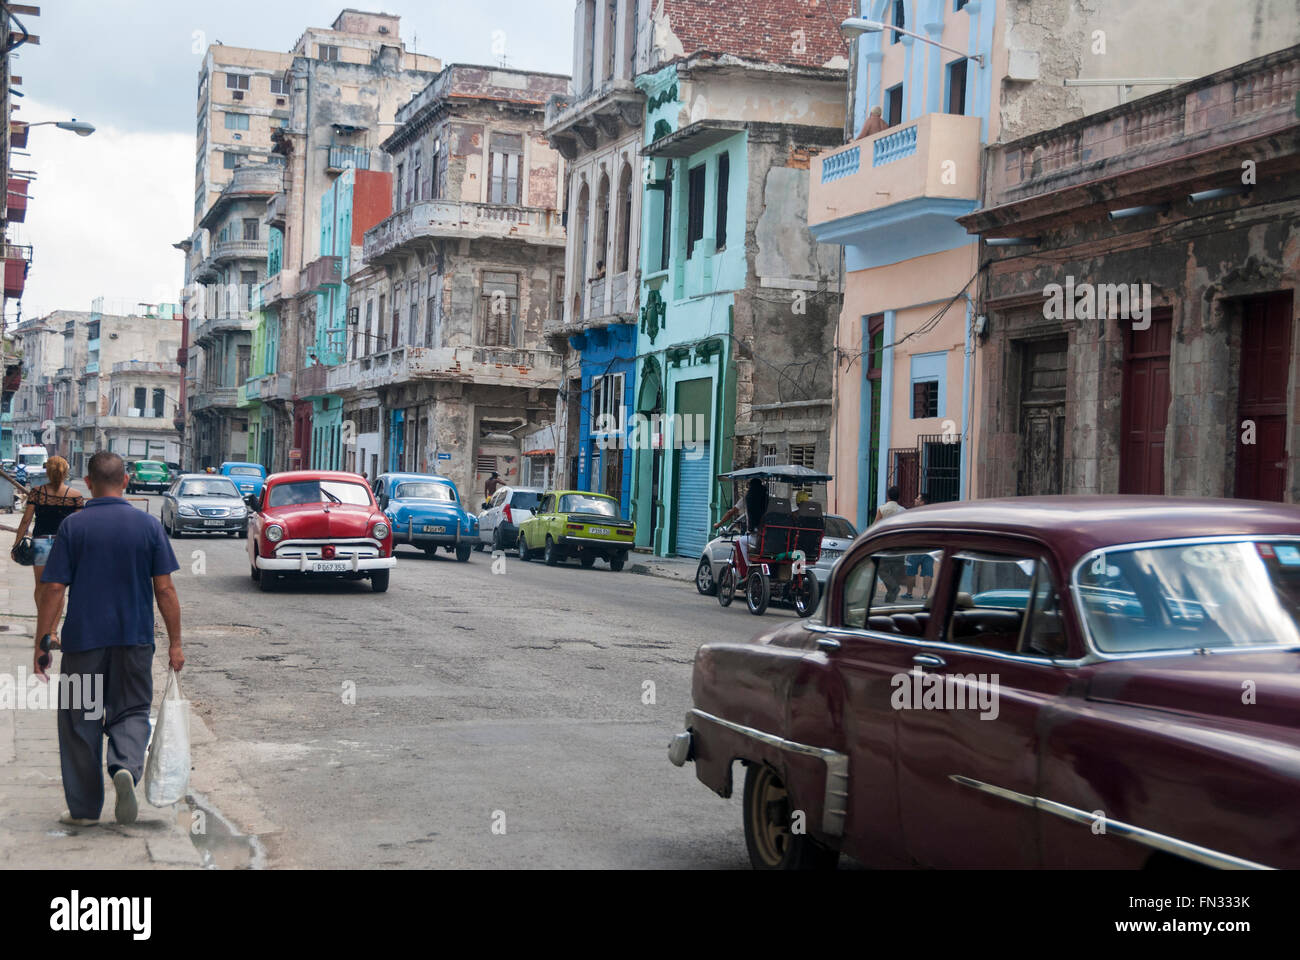 Verfallene Gebäude und amerikanische Oldtimer verwendet, da Taxis ein alltäglicher Anblick in der zentralen Stadtteil von Havanna sind Stockfoto